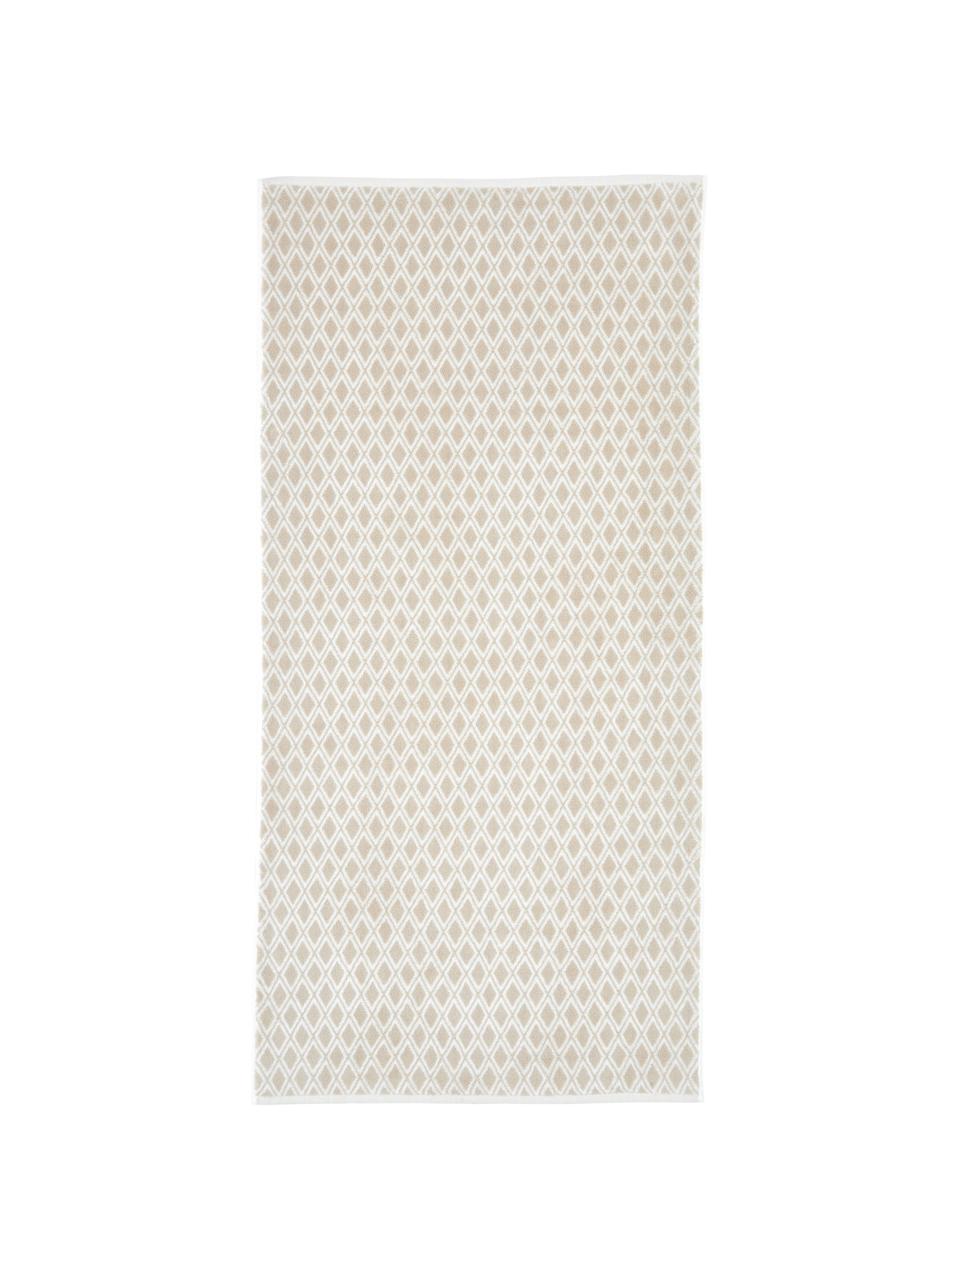 Dubbelzijdige handdoekenset Ava, 3-delig, 100% katoen, middelzware kwaliteit, 550 g/m², Zandkleurig, crèmewit, Set met verschillende formaten